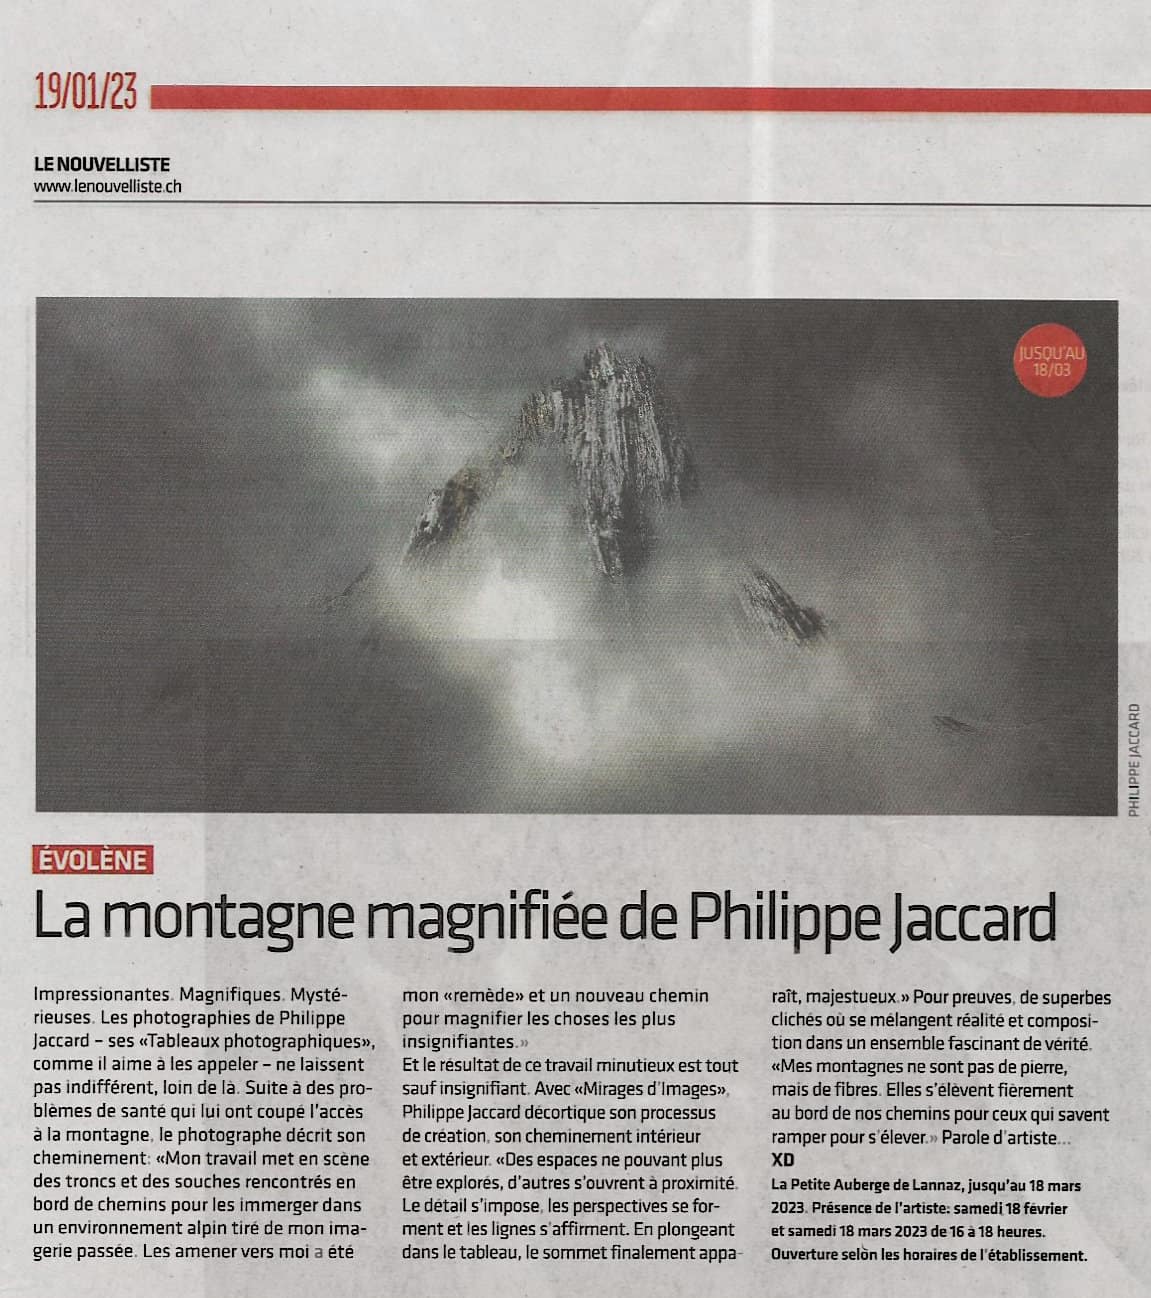 Le Nouvelliste 19.01.2023 exposition Lannaz Philippe Jaccard